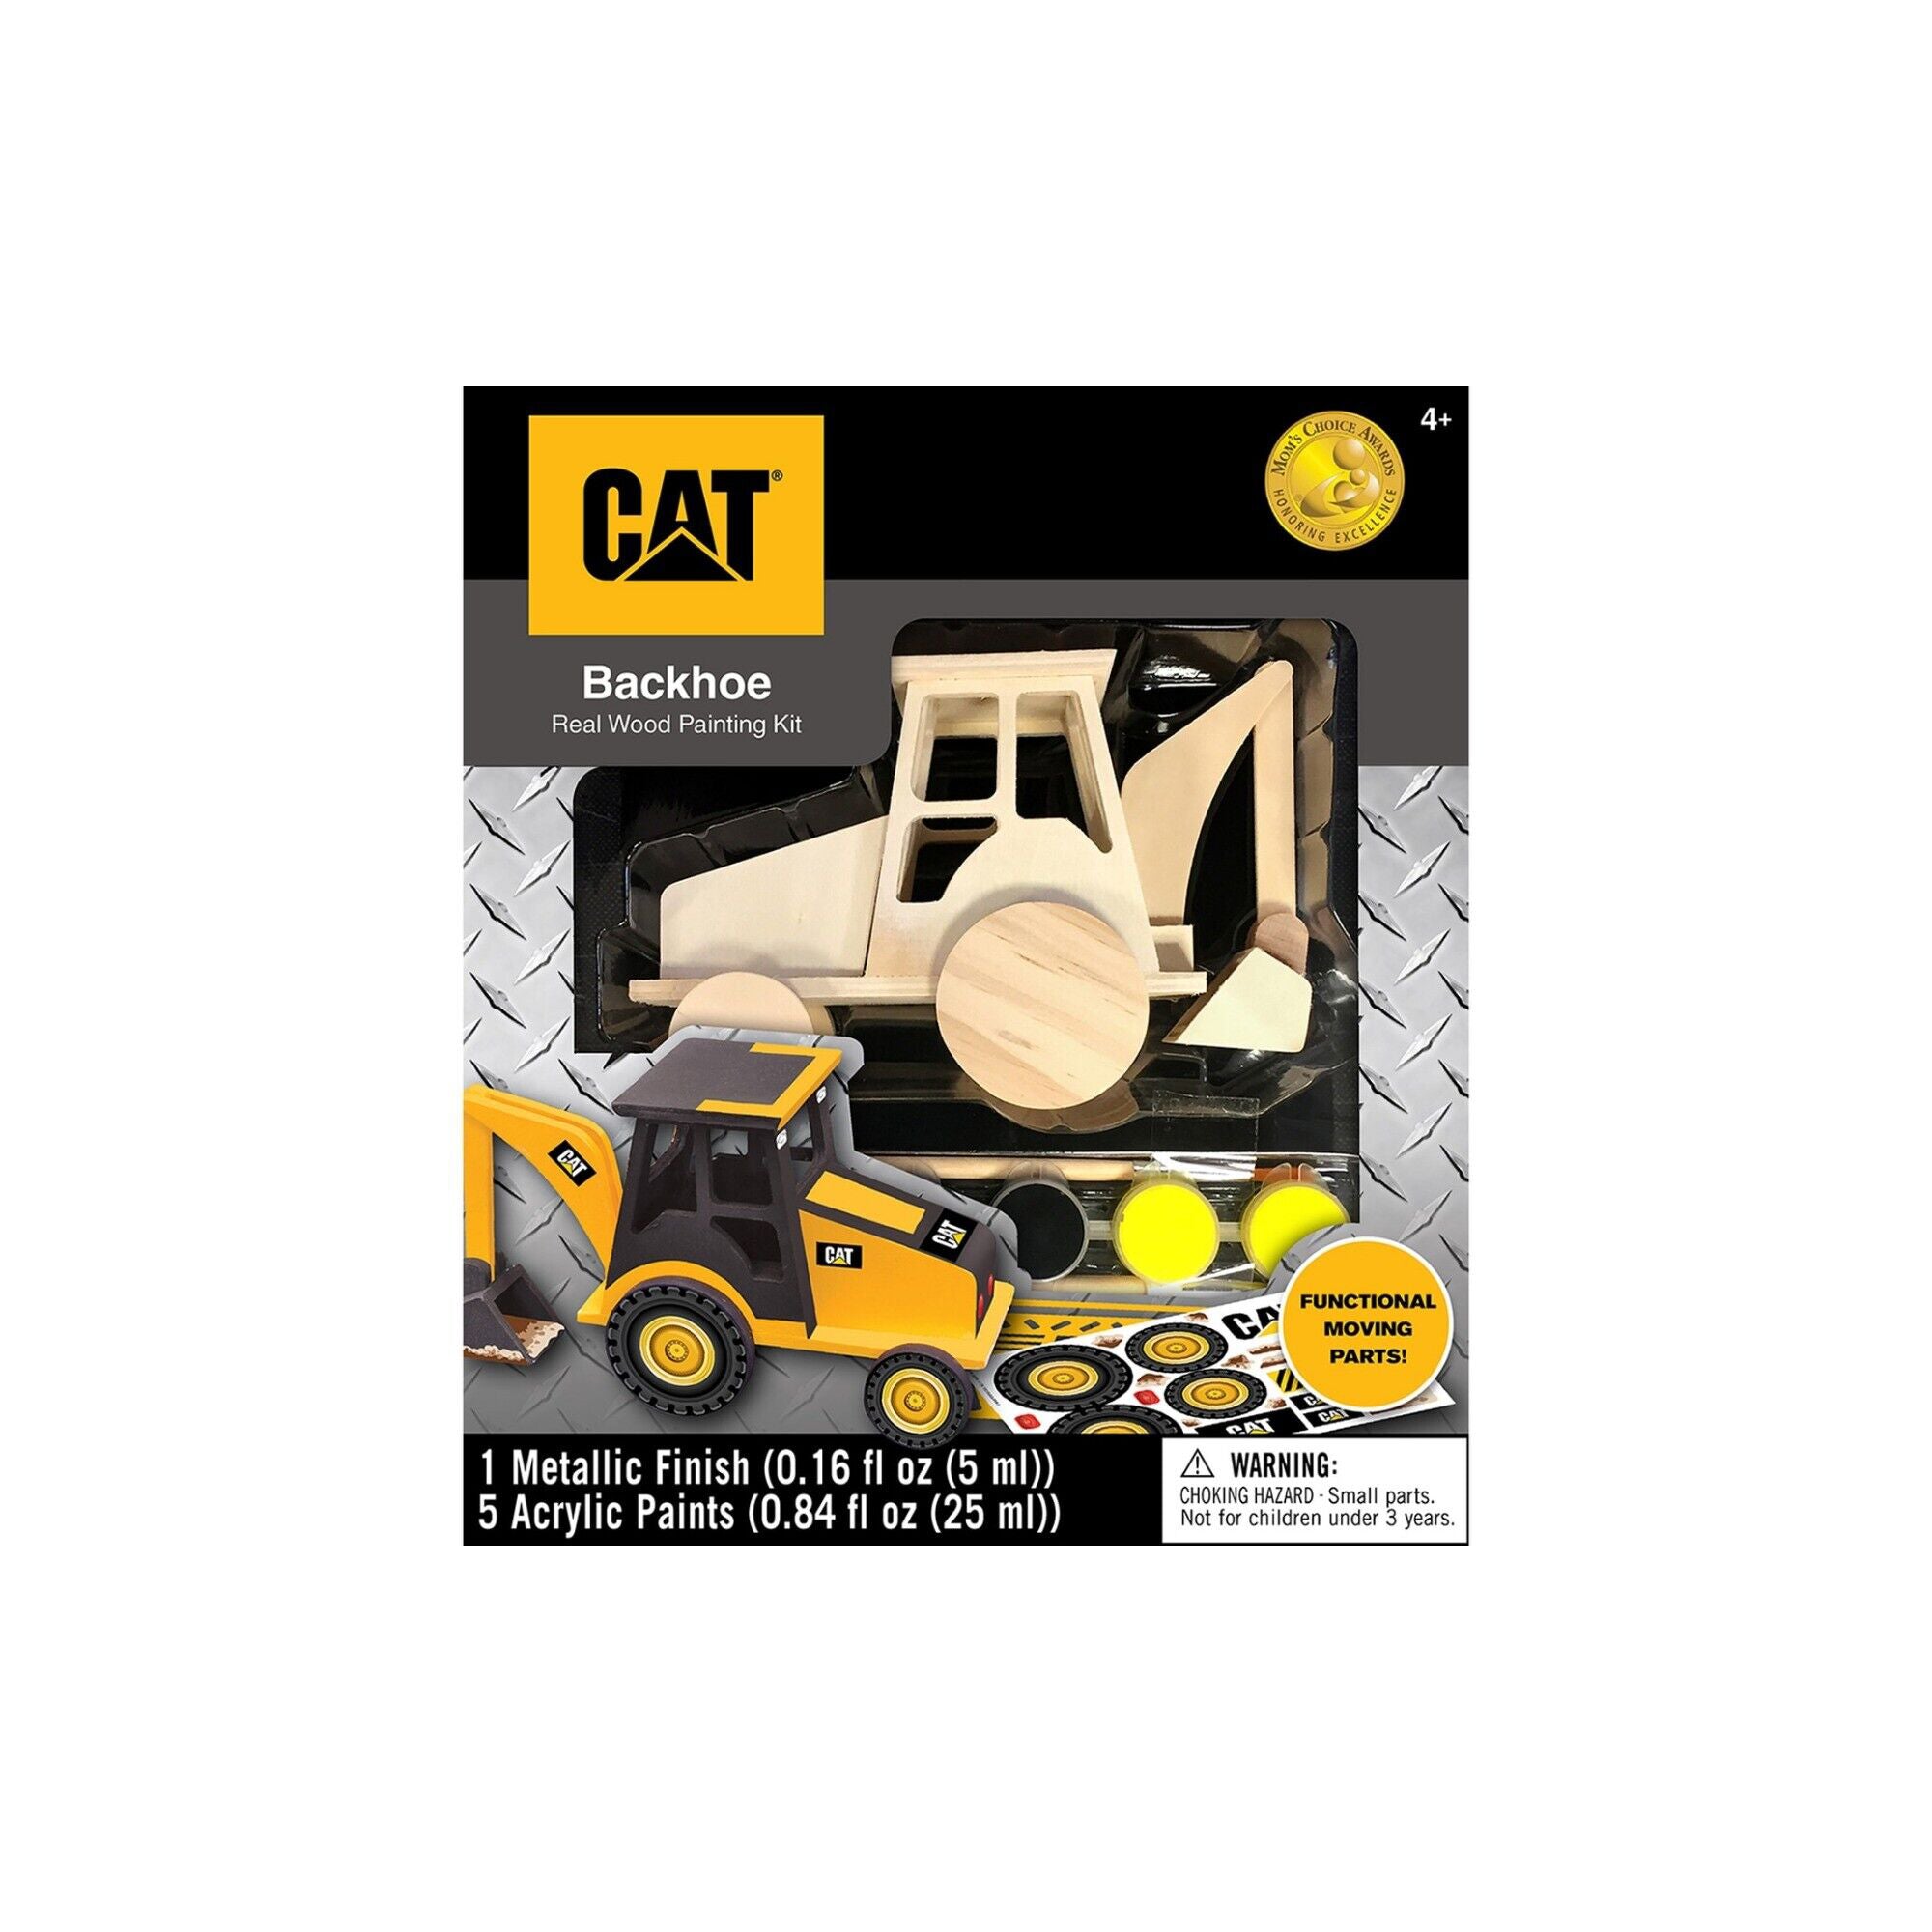 CAT Backhoe Wood Paint Kit